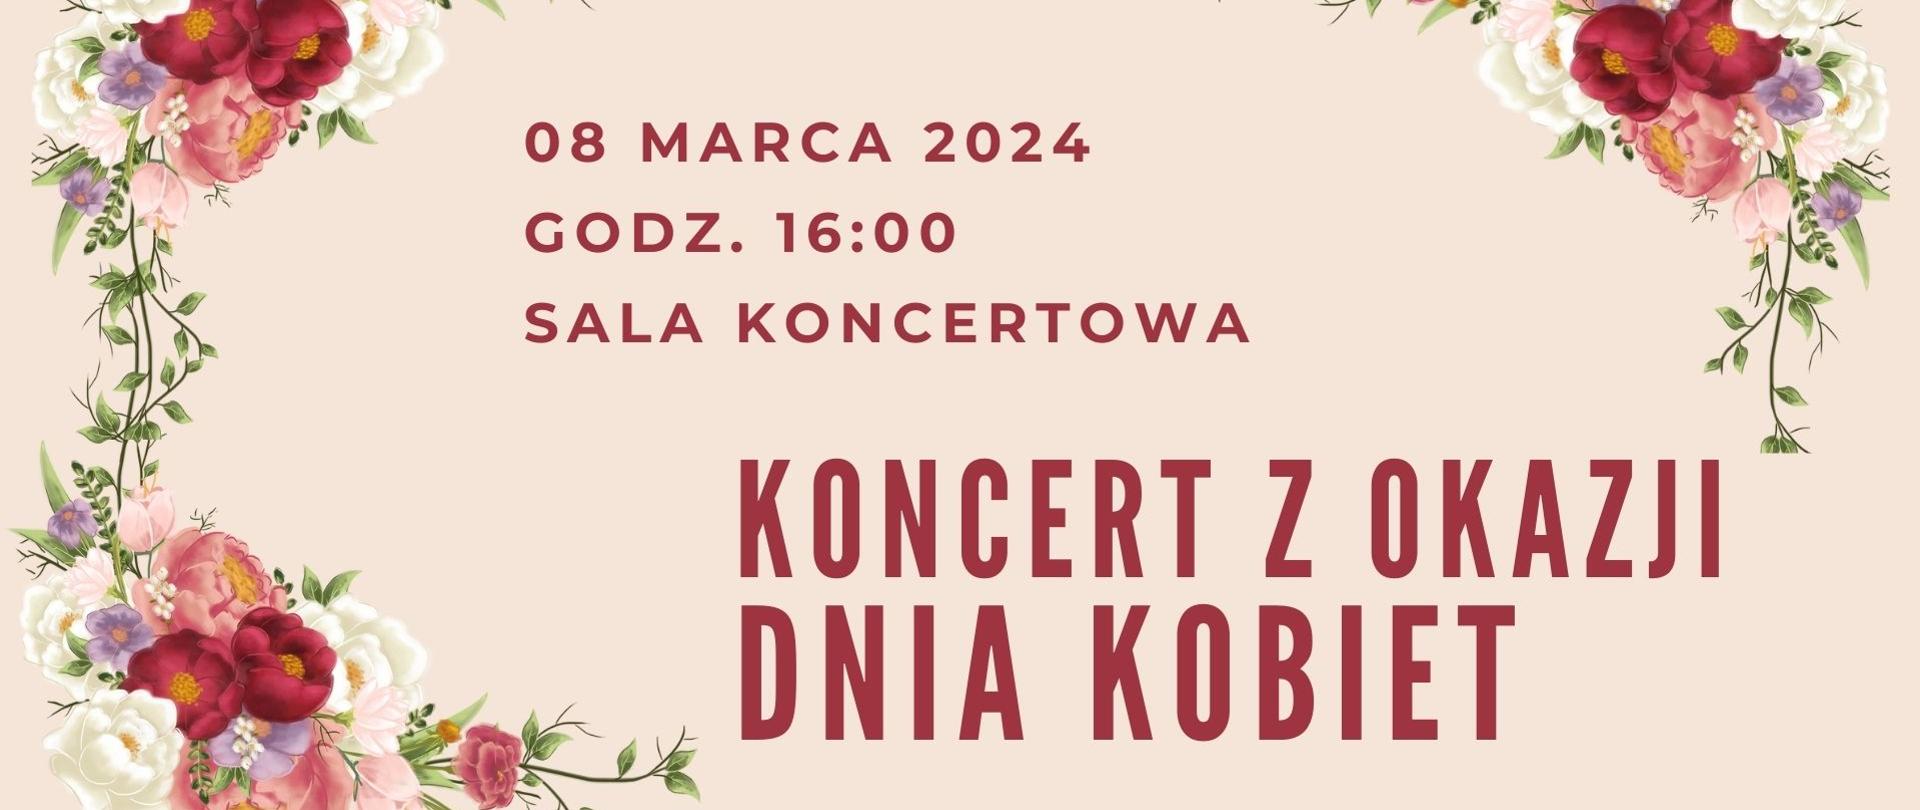 Plakat z bukietami kwiatów, z napisem 08 marca 2024 godz. 16:00 sala koncertowa, Koncert z okazji Dnia Kobiet